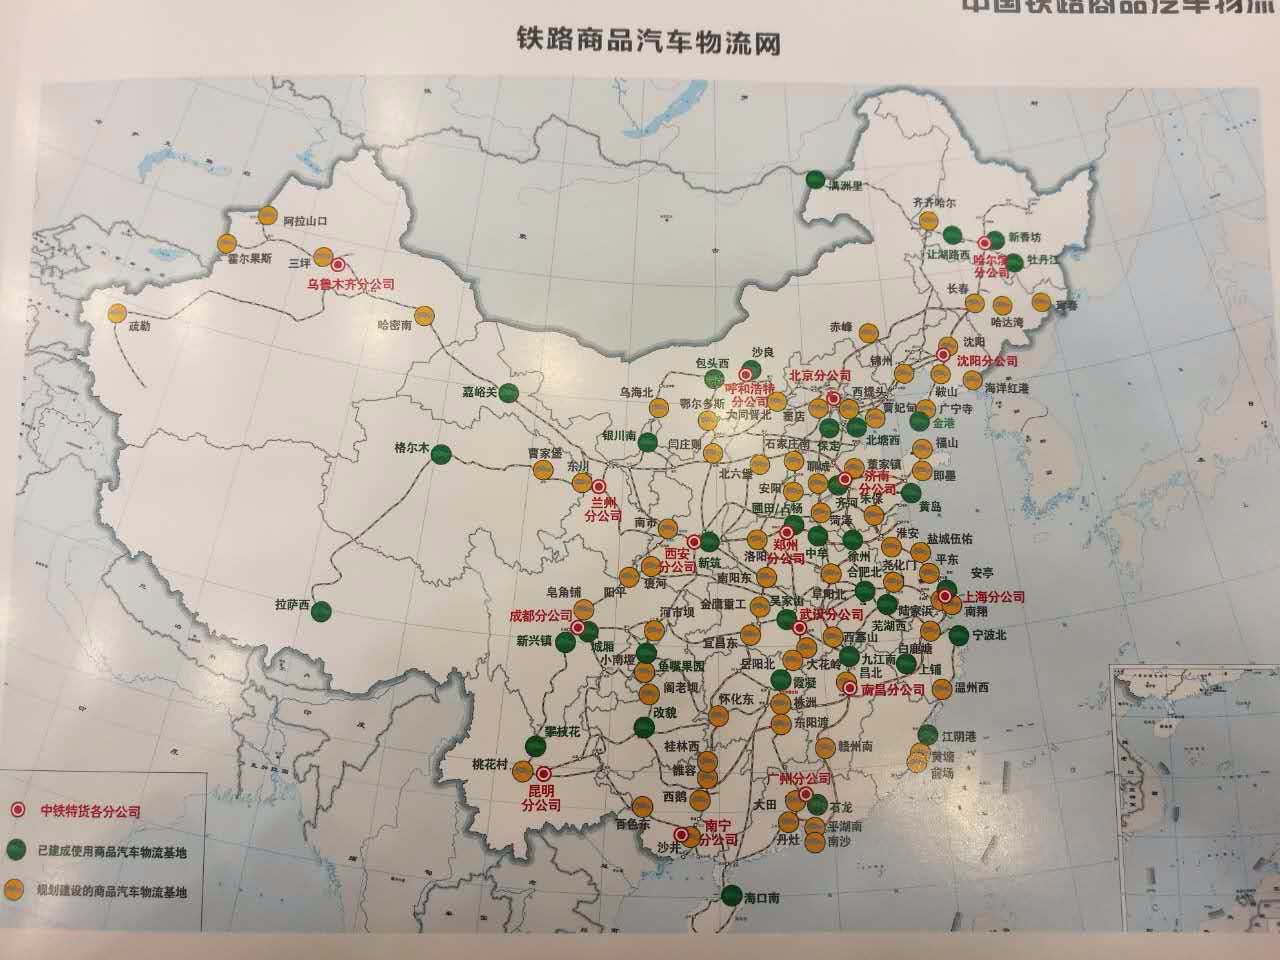 中国铁路总公司:今年将完成铁路运输汽车